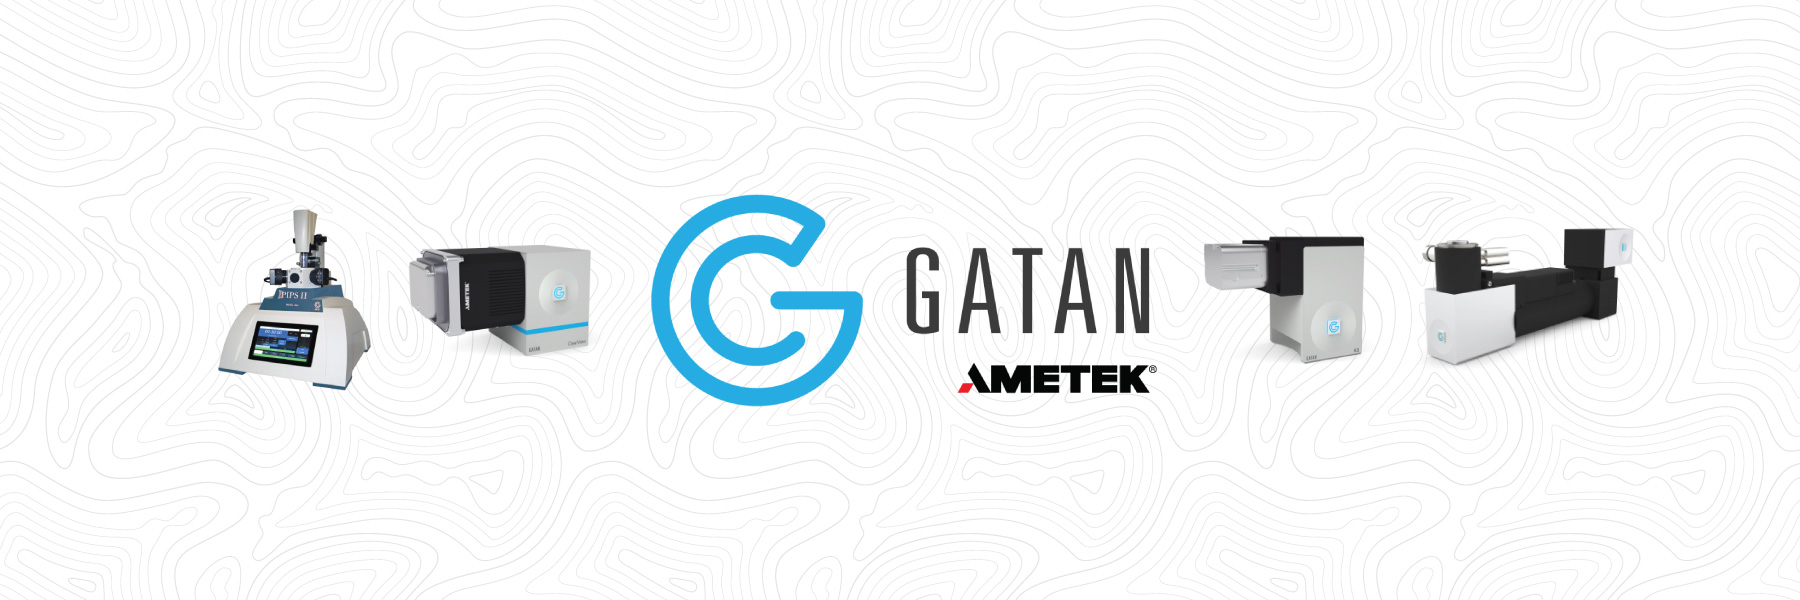 Introducing Gatan